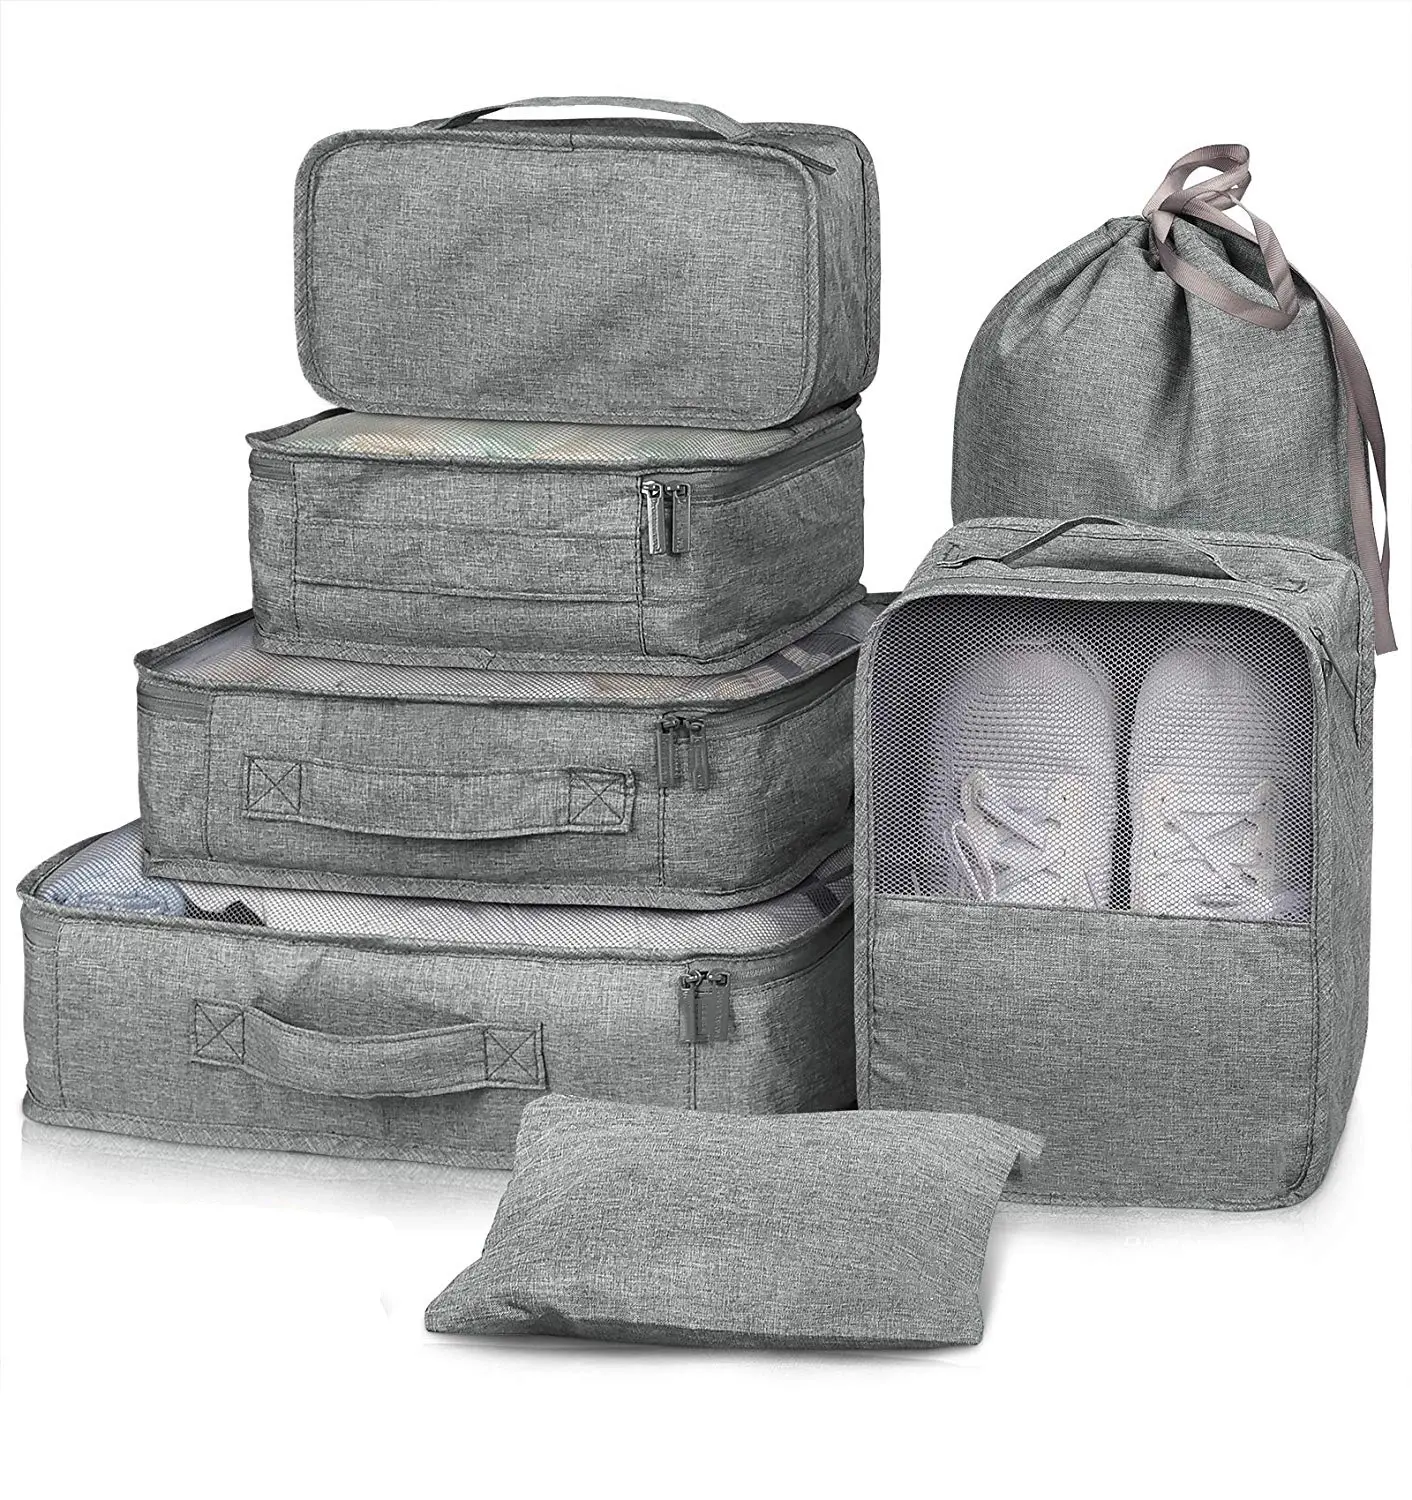 Waterproof luggage packing cubes storage travel organizer bag set